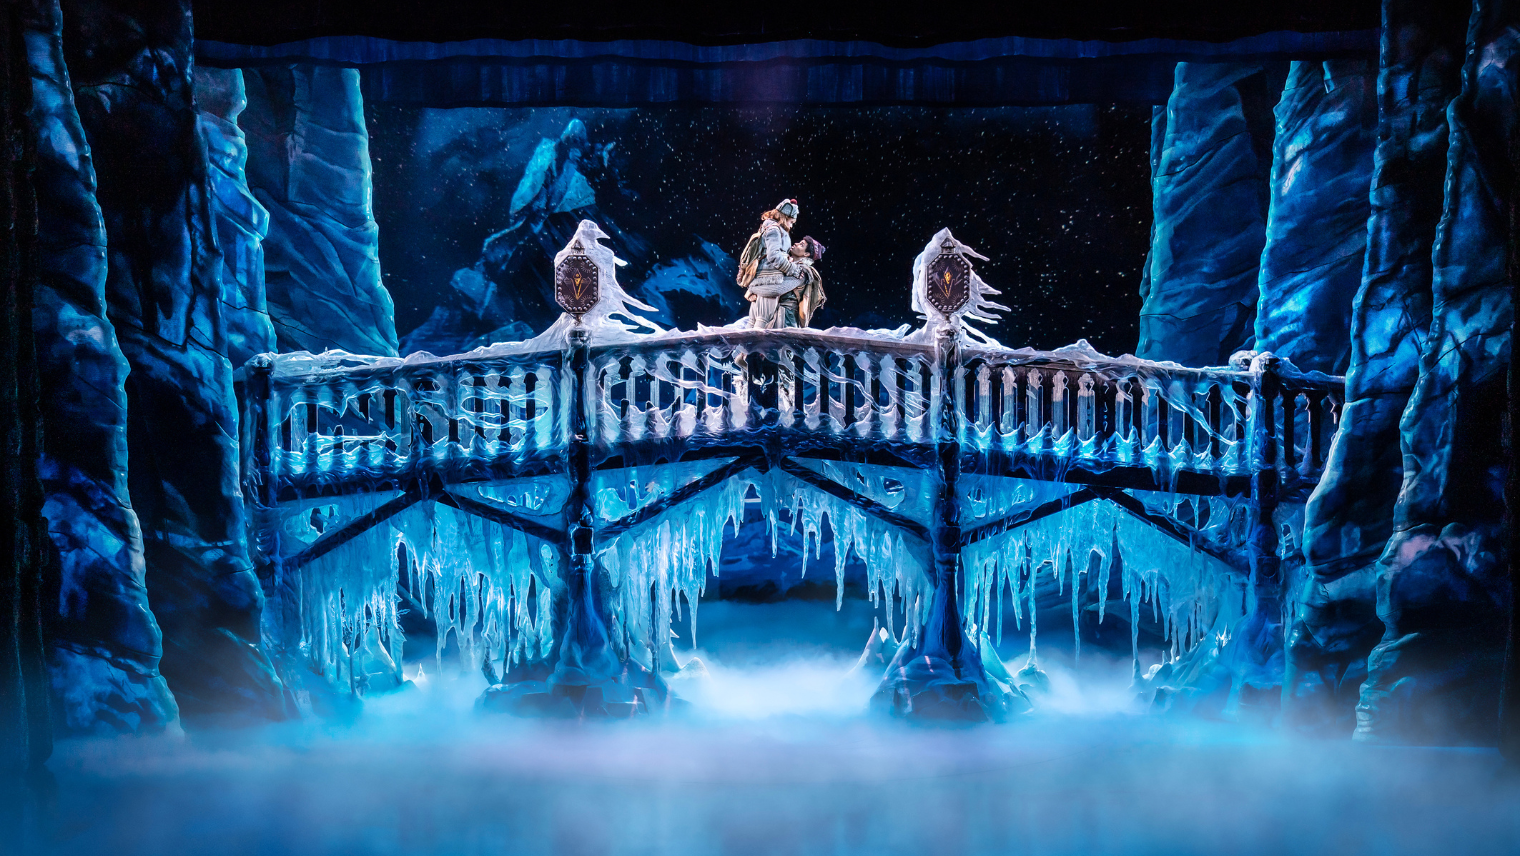 Frozen theatre show production